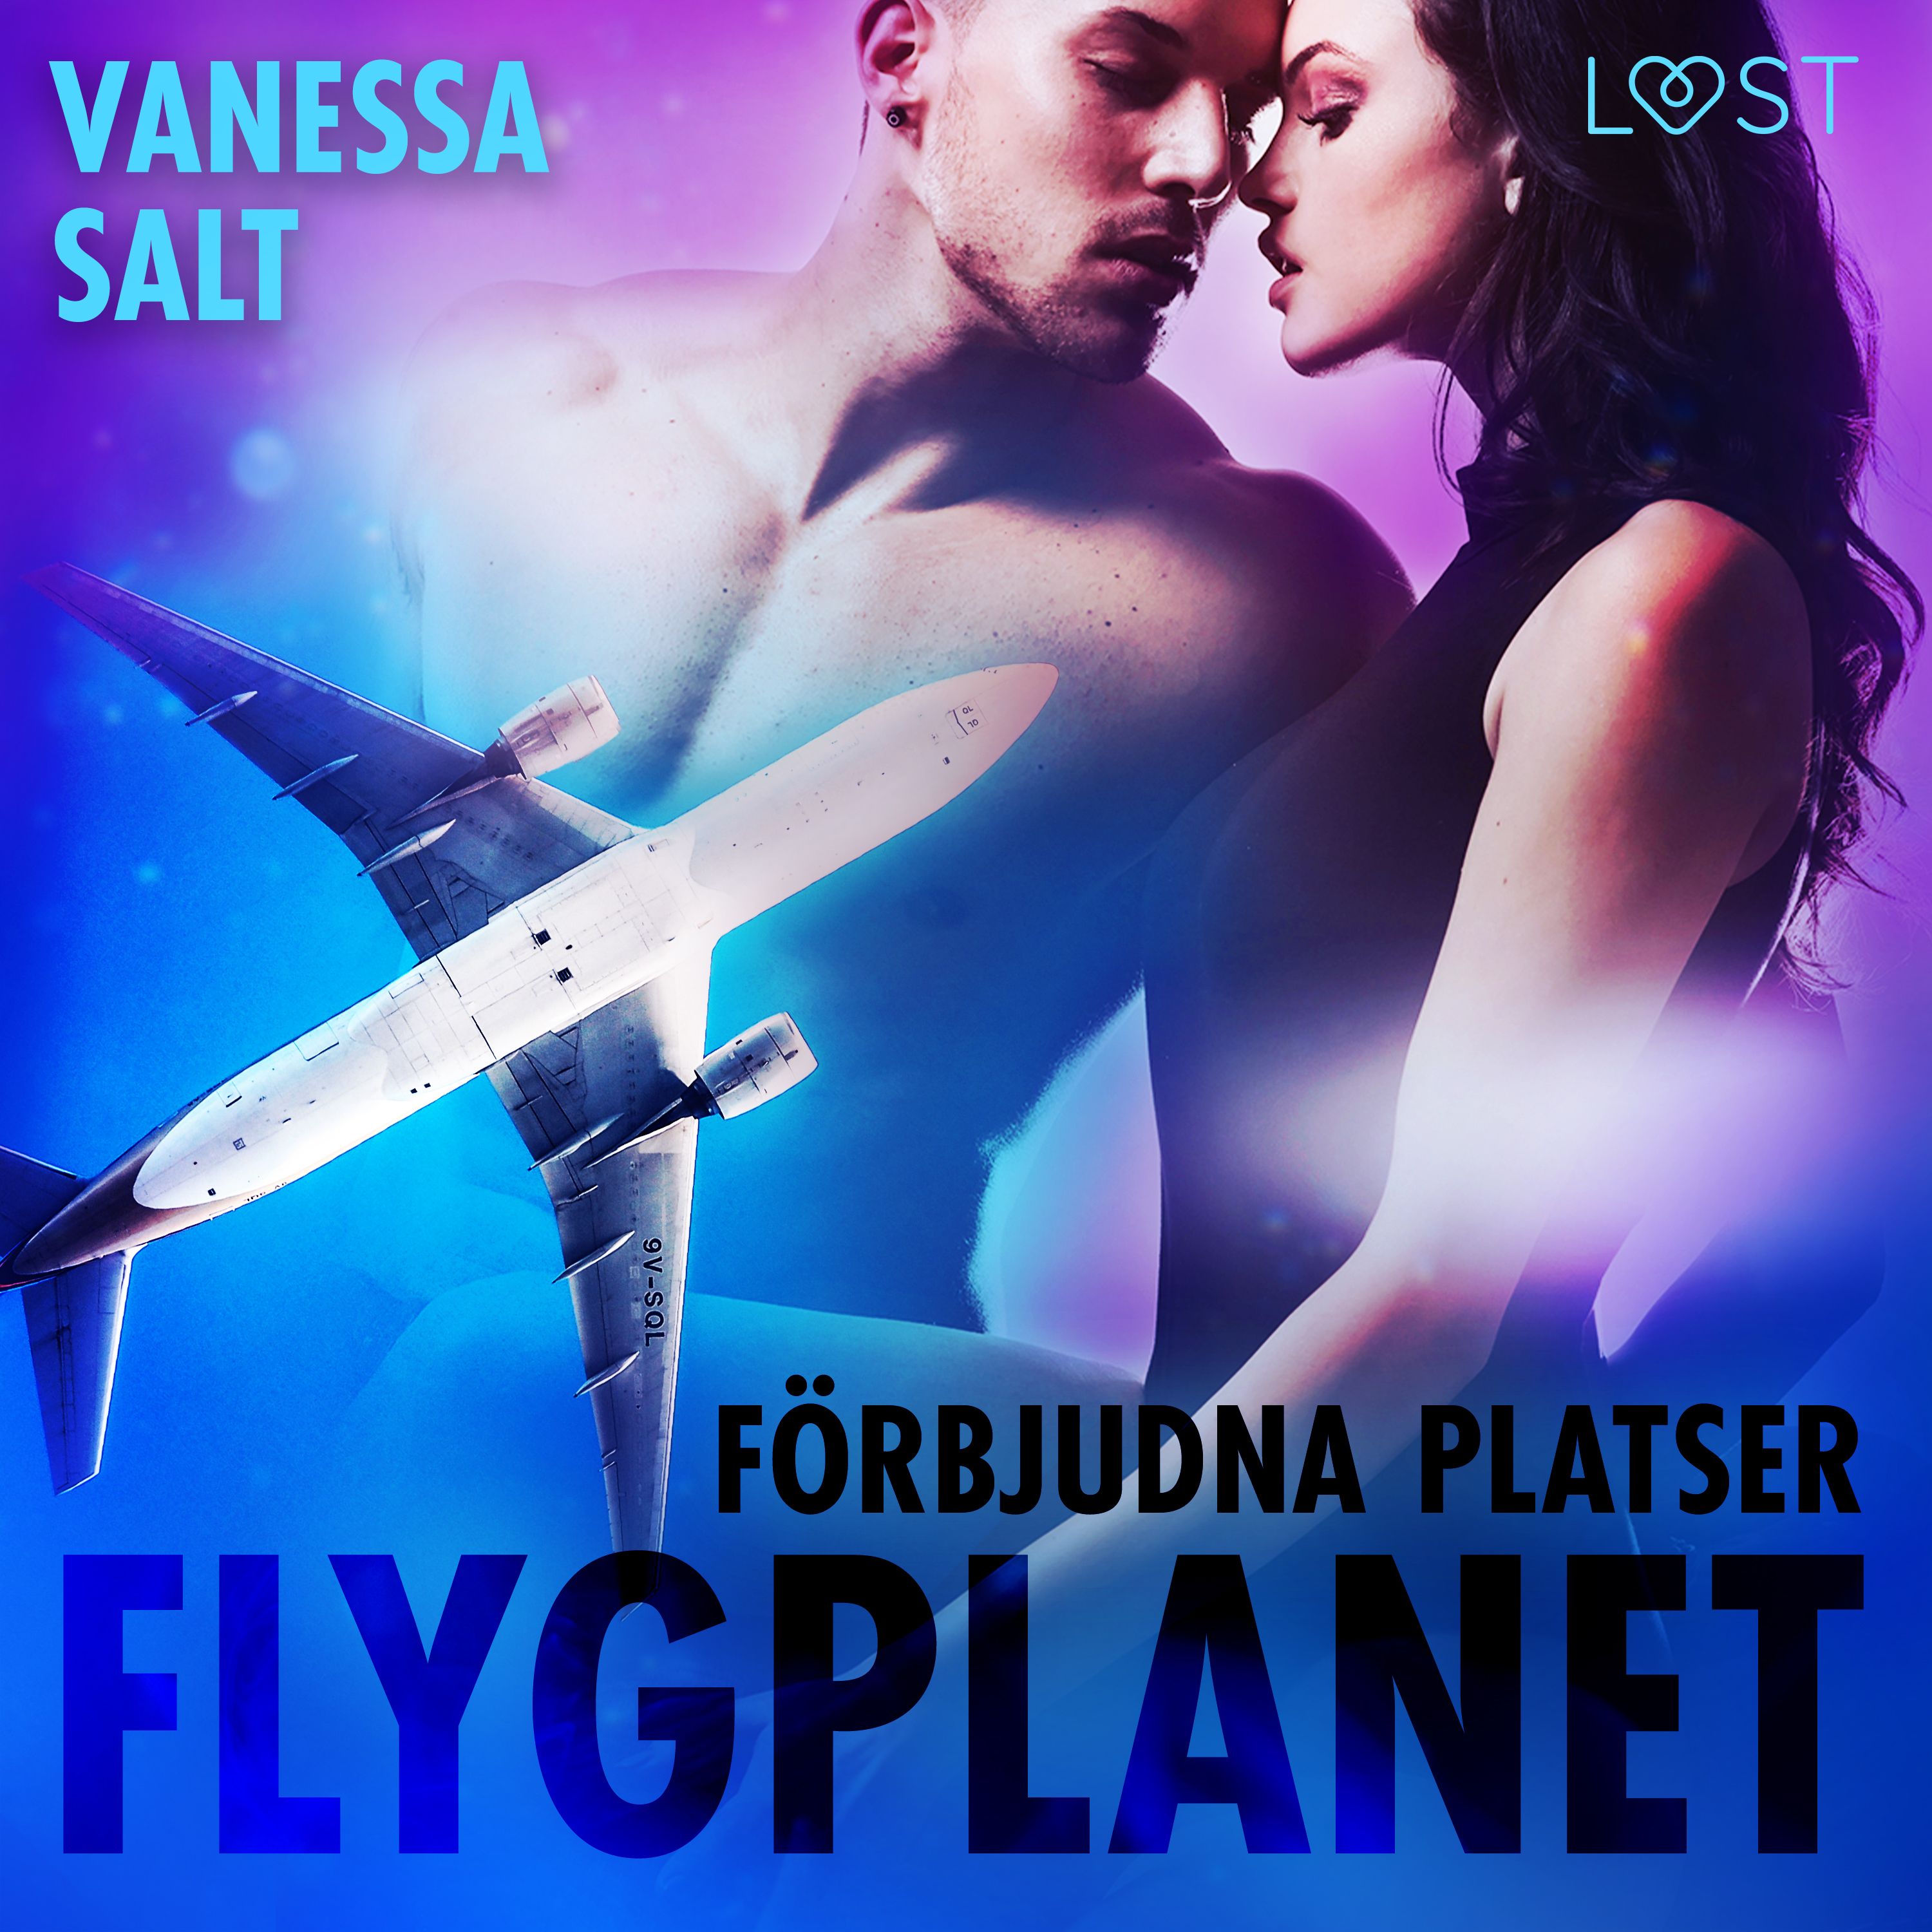 Förbjudna platser: Flygplanet, audiobook by Vanessa Salt